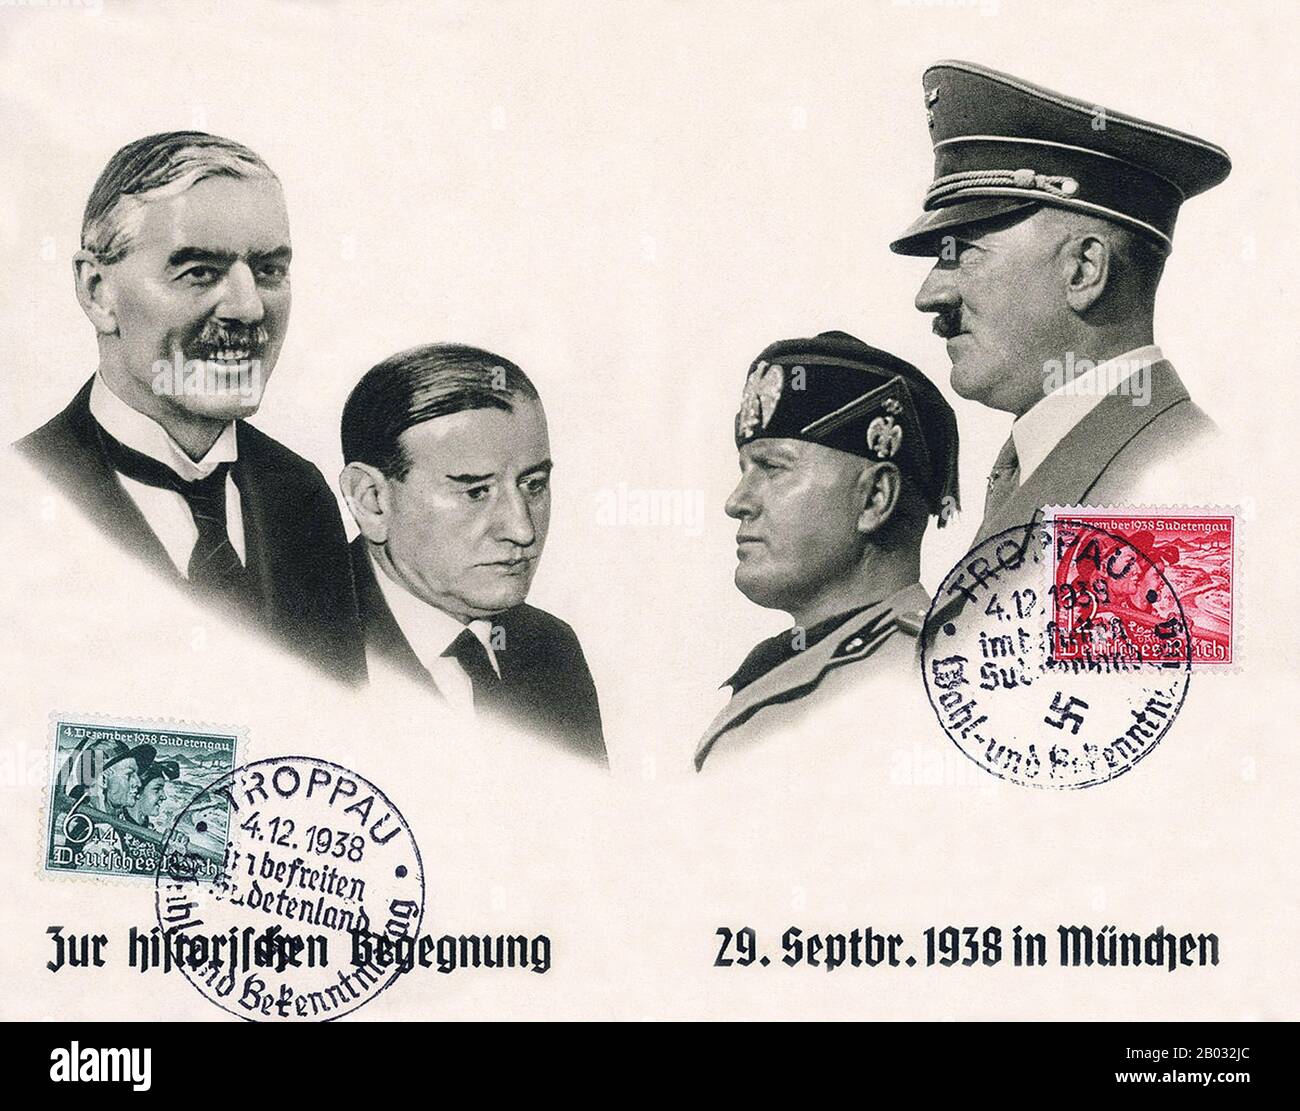 L'accord de Munich était un accord permettant l'annexion par l'Allemagne nazie de certaines parties de la Tchécoslovaquie le long des frontières du pays, principalement habitées par des locuteurs allemands, pour lesquelles une nouvelle désignation territoriale "Pays-Bas" a été inventée. L'accord a été négocié lors d'une conférence tenue à Munich, en Allemagne, entre les principales puissances européennes, à l'exclusion de l'Union soviétique et de la Tchécoslovaquie. Aujourd'hui, elle est largement considérée comme un acte manqué d'apaisement envers l'Allemagne nazie. Banque D'Images